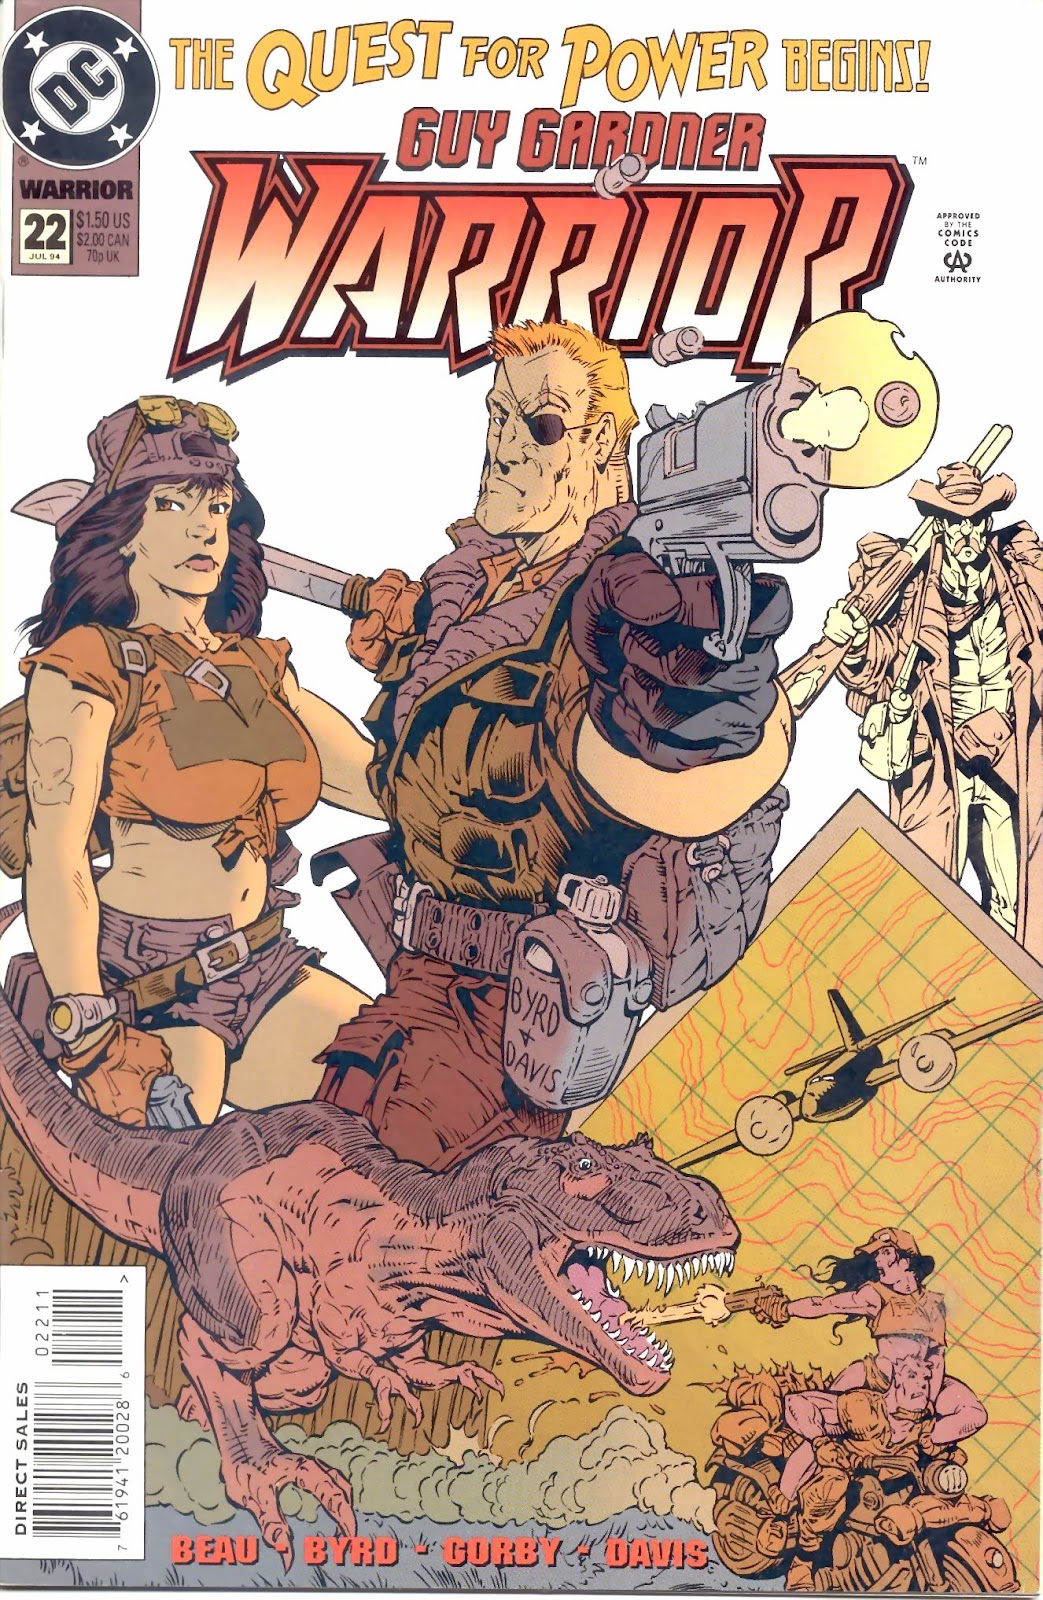 Guy Gardner: Warrior issue 22 - Page 1